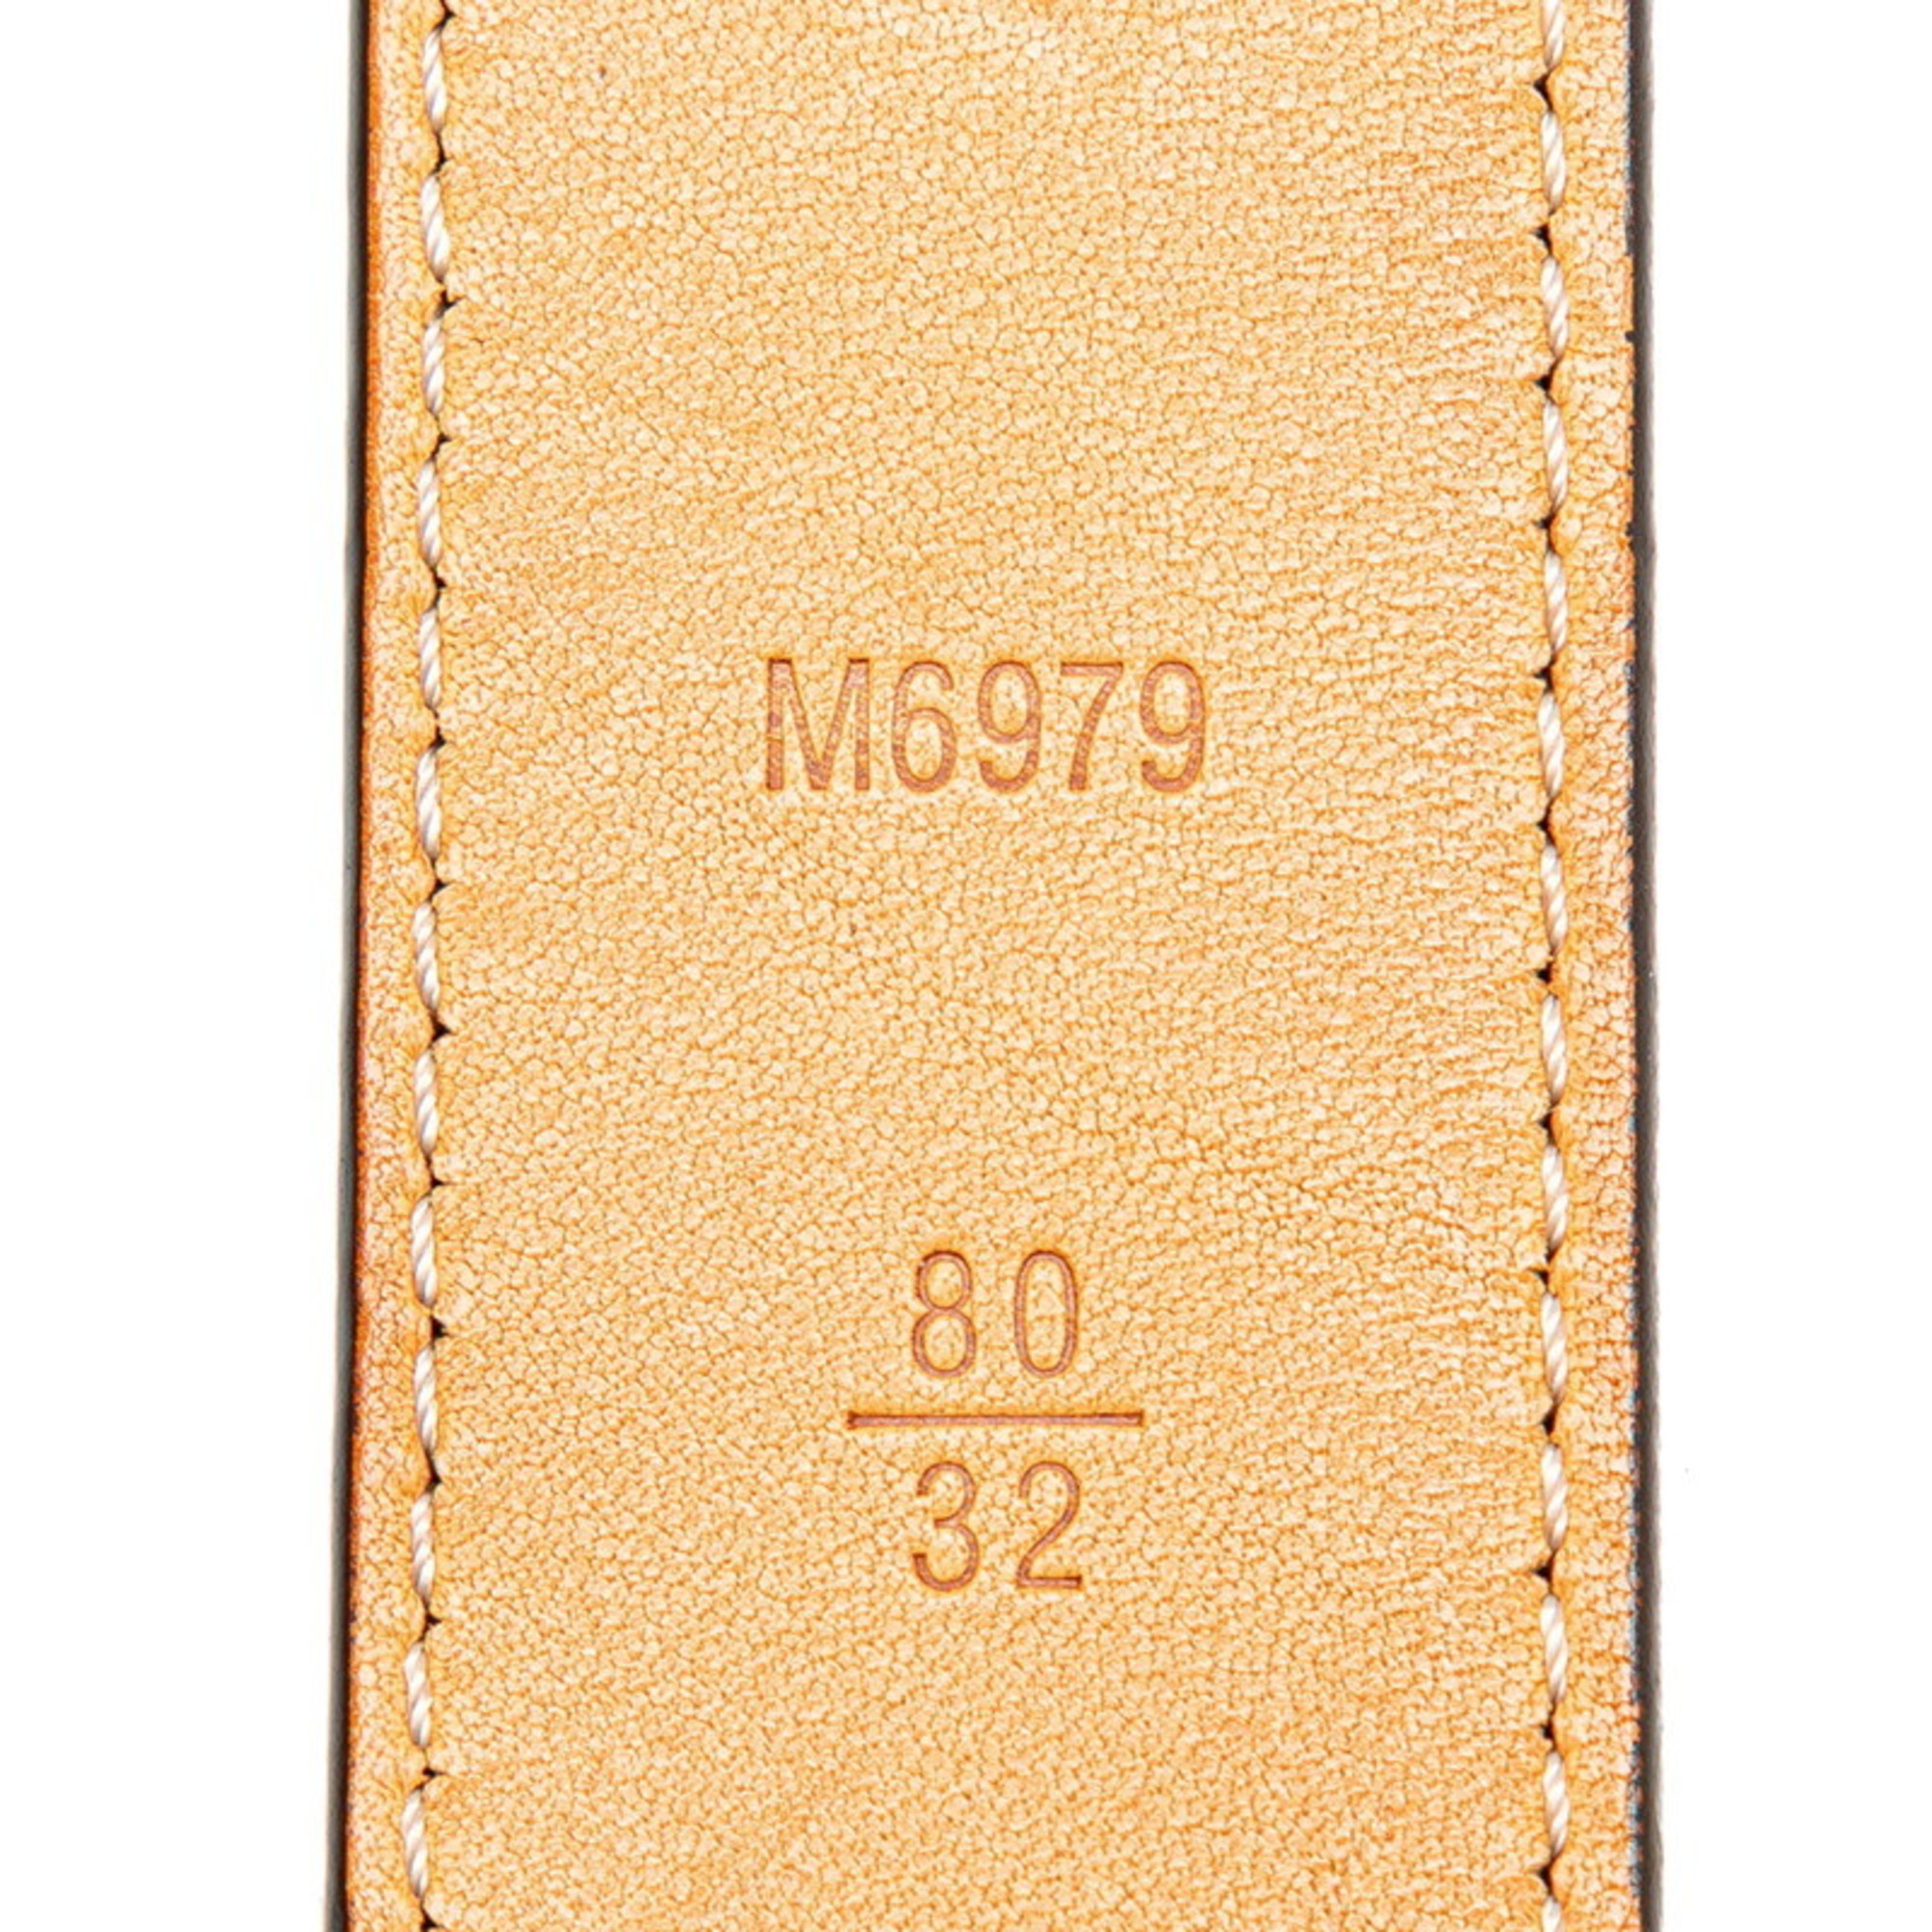 Louis Vuitton Monogram Vernis Santur Belt 32/80 M6979 Amaranth Purple Patent Leather Women's LOUIS VUITTON